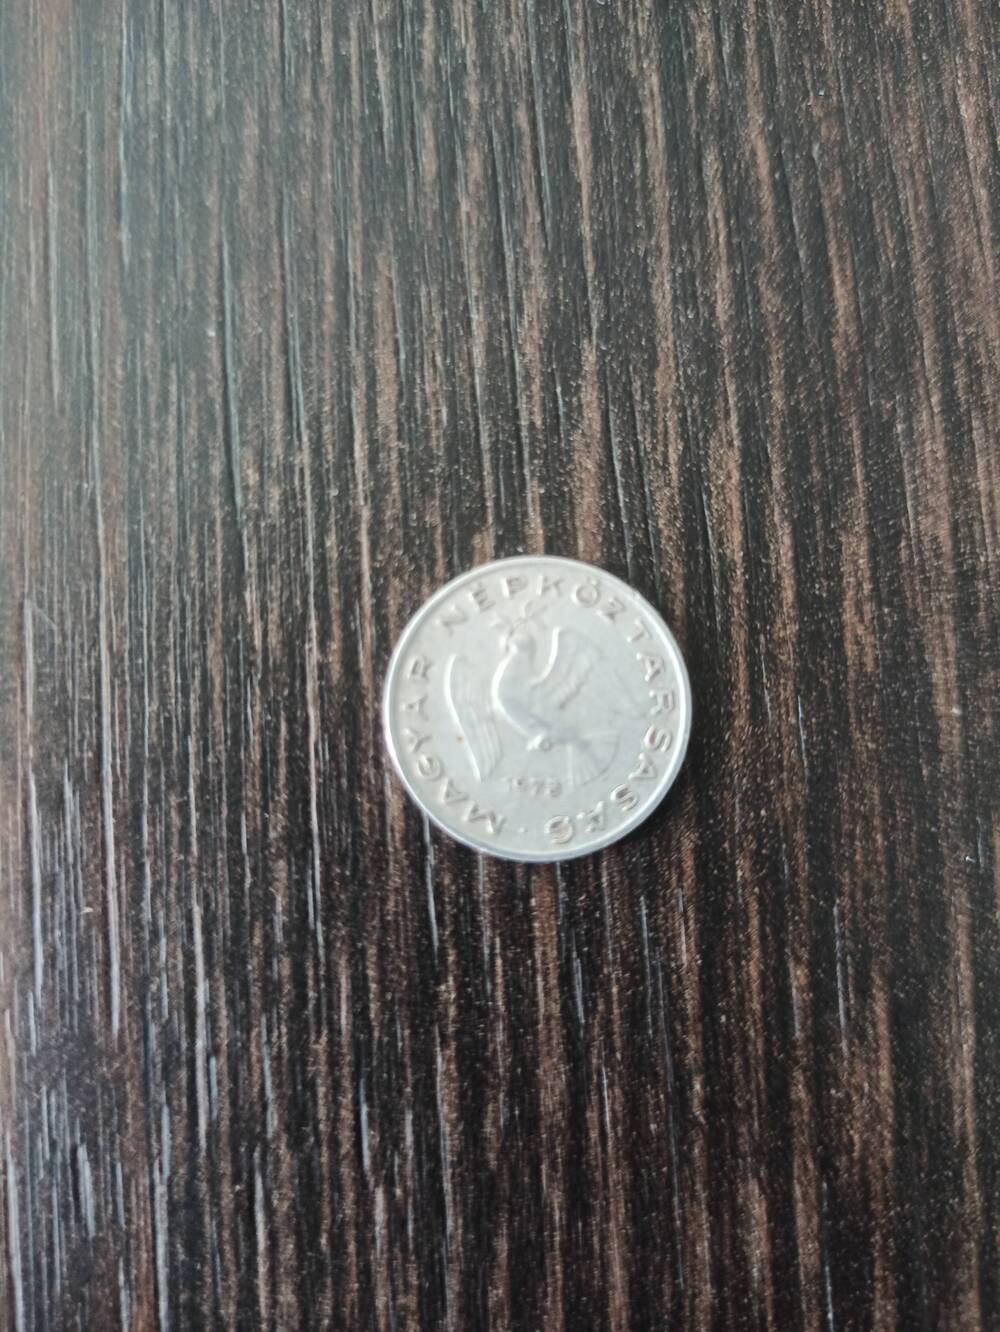 Нумизматика. Монета Венгрии достоинством 10 филлеров 1973 года. Лицевая сторона – изображен летящий голубь в клюве веточка – дата 1973 и по кругу надпись. Гербовая сторона – 10 филлеров (ВР)